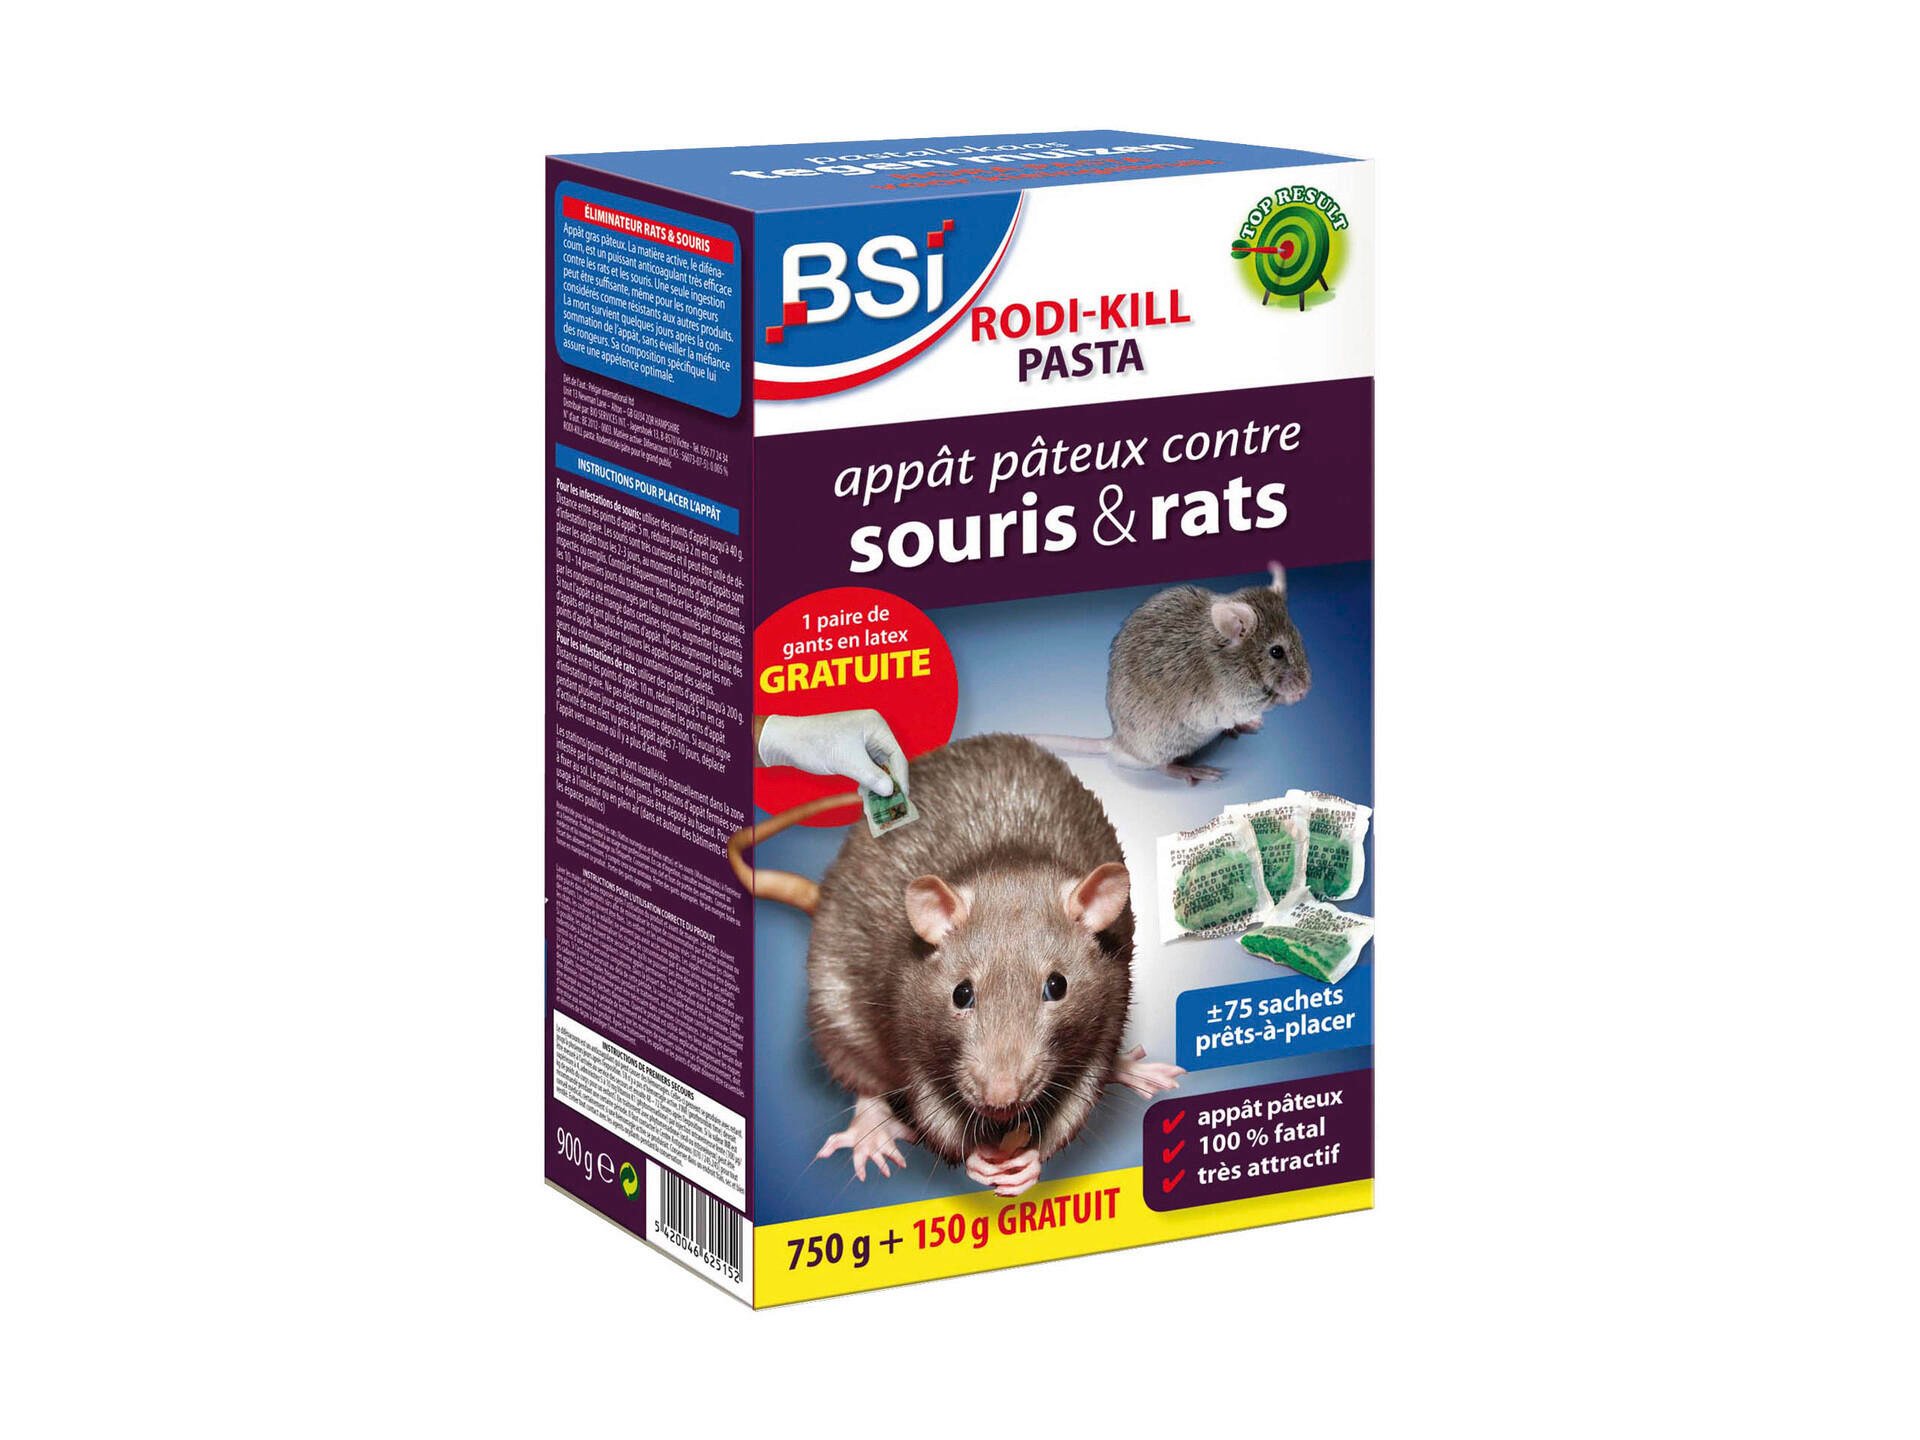 BSI Rodi-Kill pâte anti-rats & anti-souris 750g + 20% gratuit